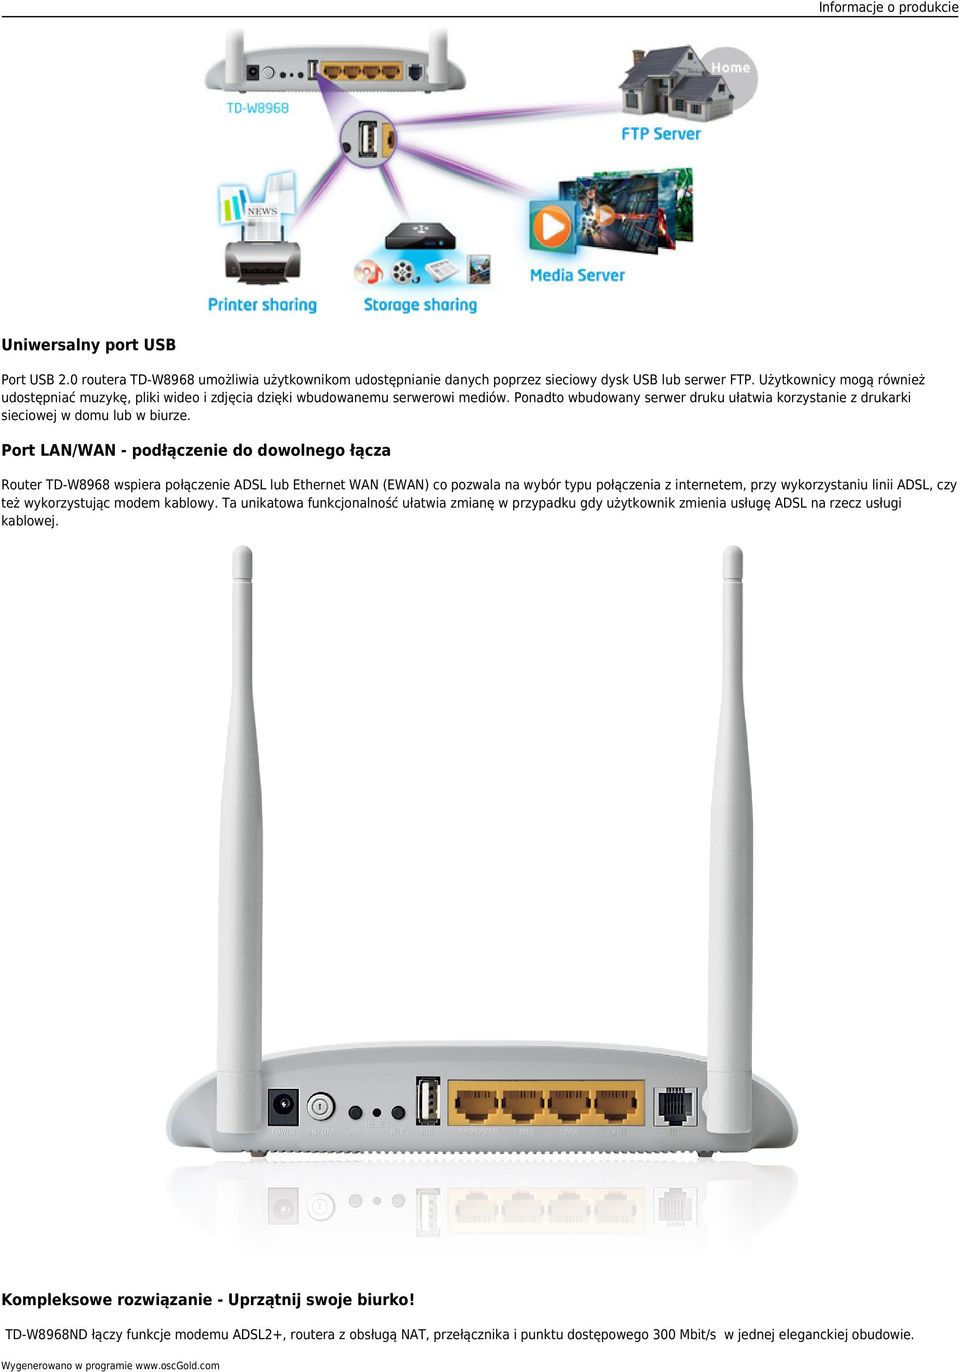 Port LAN/WAN - podłączenie do dowolnego łącza Router TD-W8968 wspiera połączenie ADSL lub Ethernet WAN (EWAN) co pozwala na wybór typu połączenia z internetem, przy wykorzystaniu linii ADSL, czy też